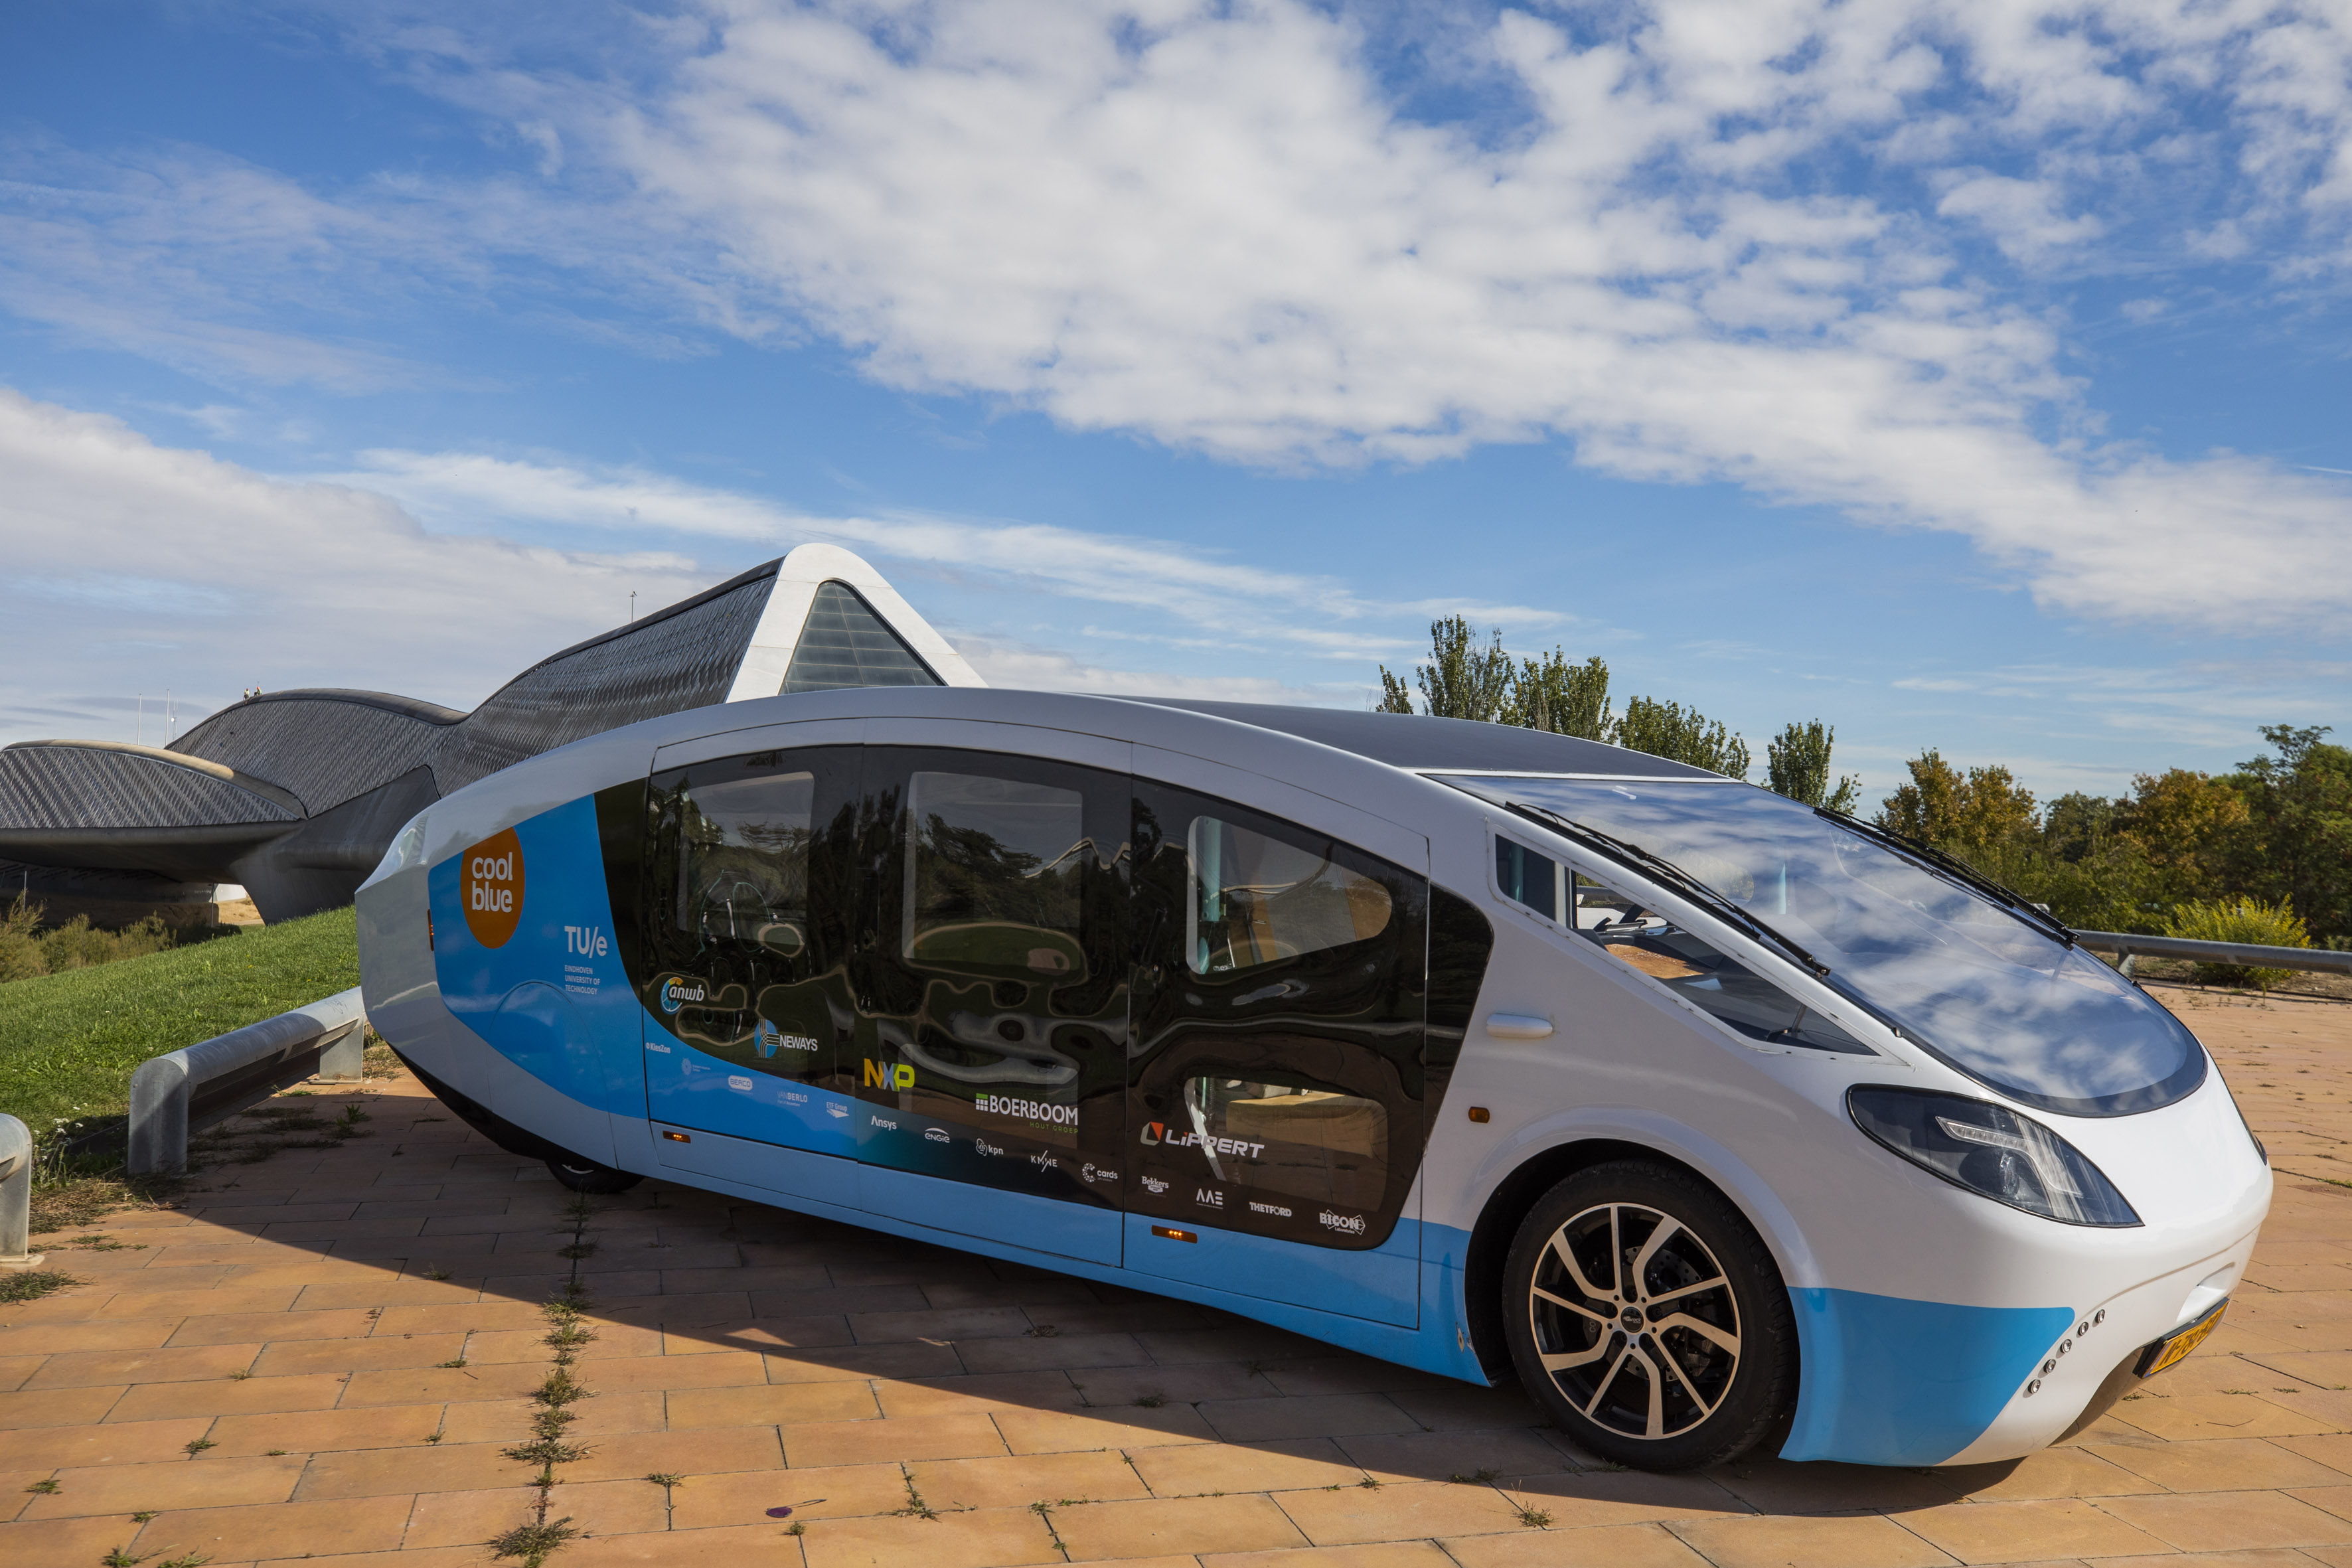 Presentación del coche solar en el Pabellón Puente, futura sede de Mobility City